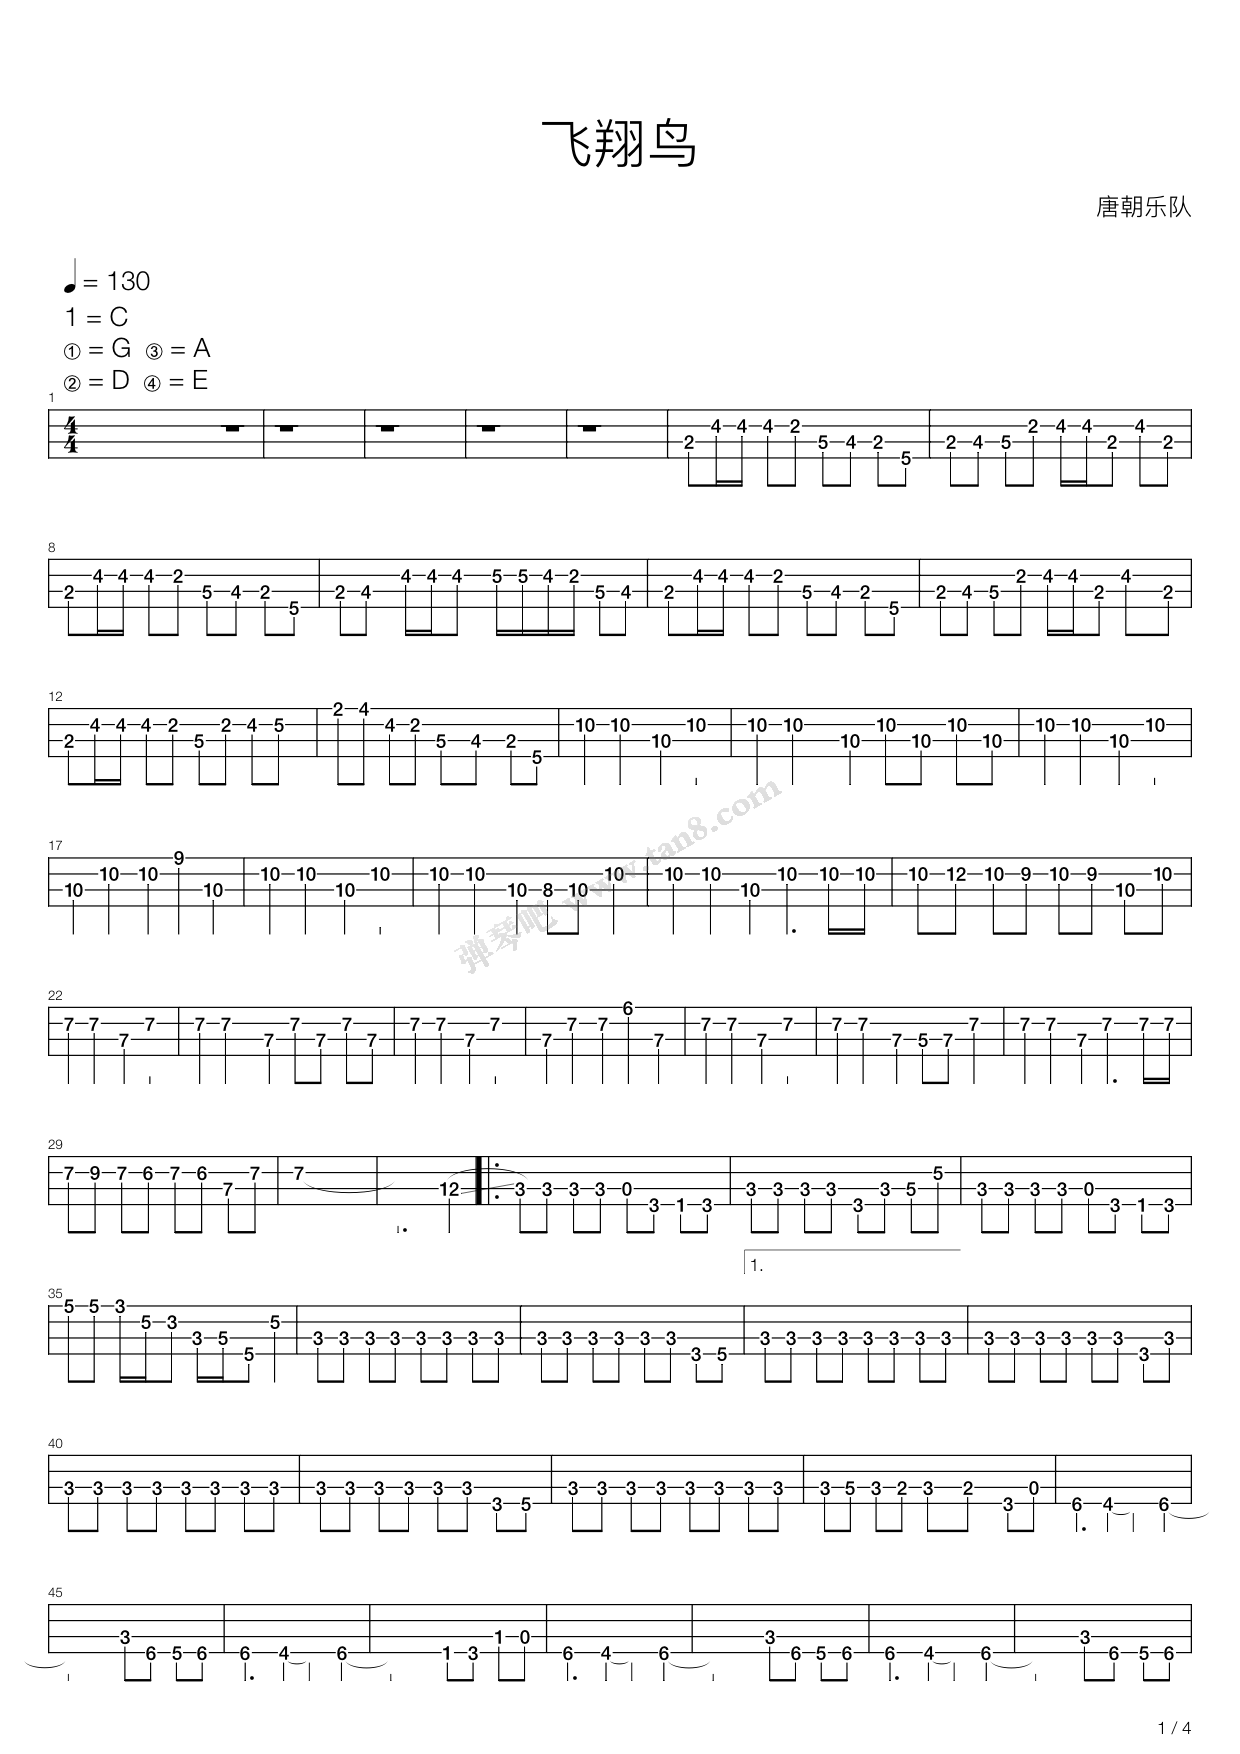 ★ 刺鸟 | Sheet Music | Piano Score Free PDF Download | HK Pop Piano Academy